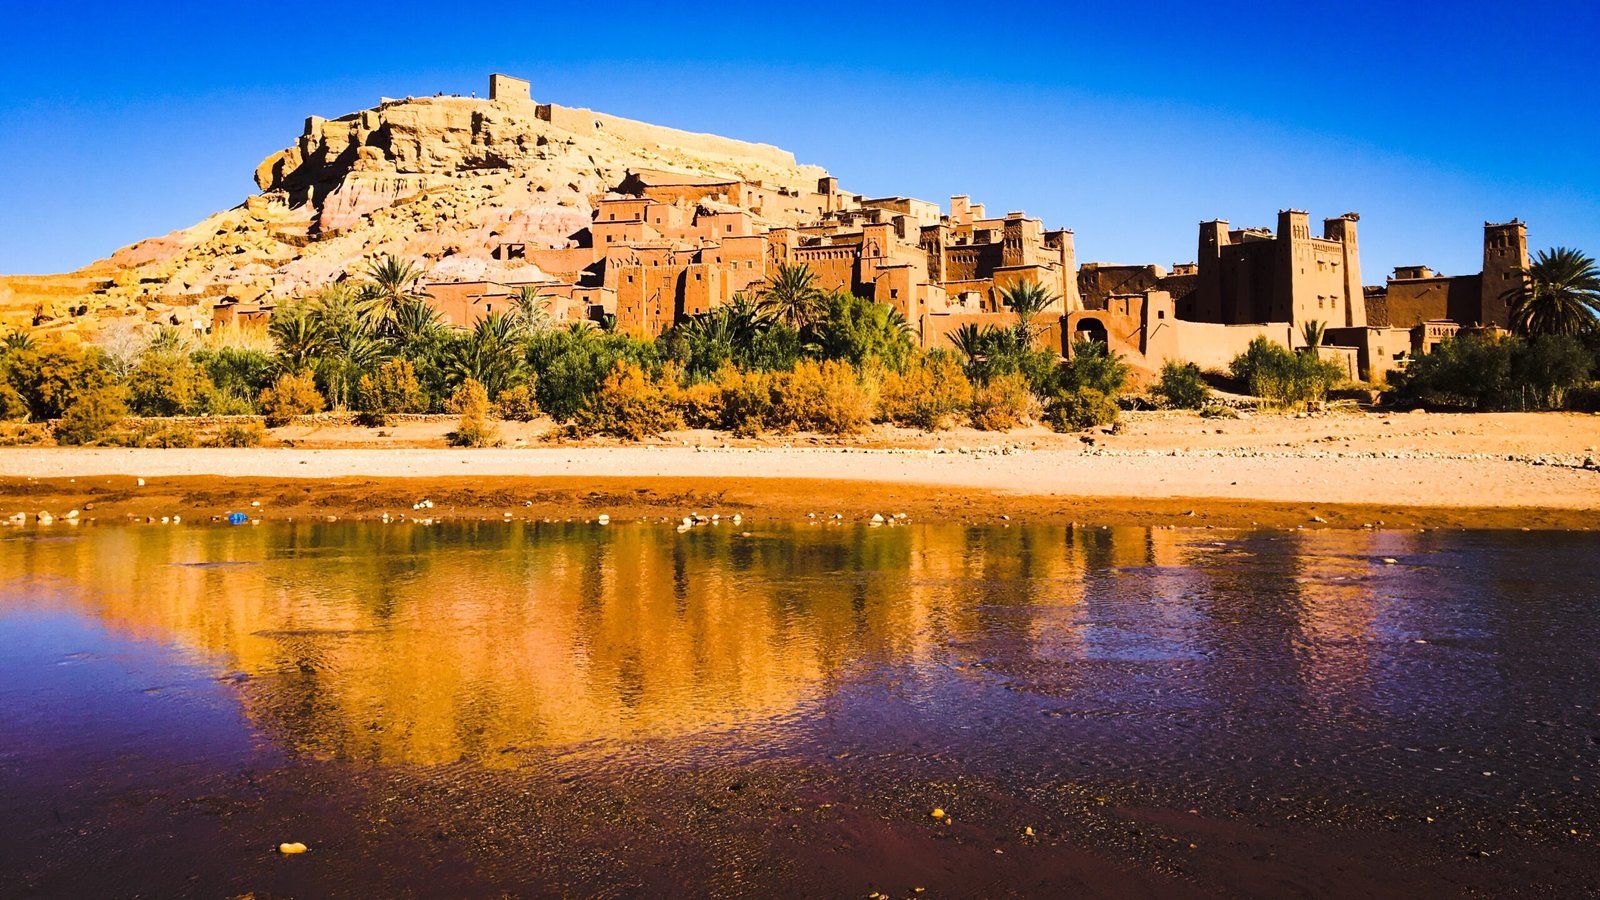 My Marrakech Desert Tours